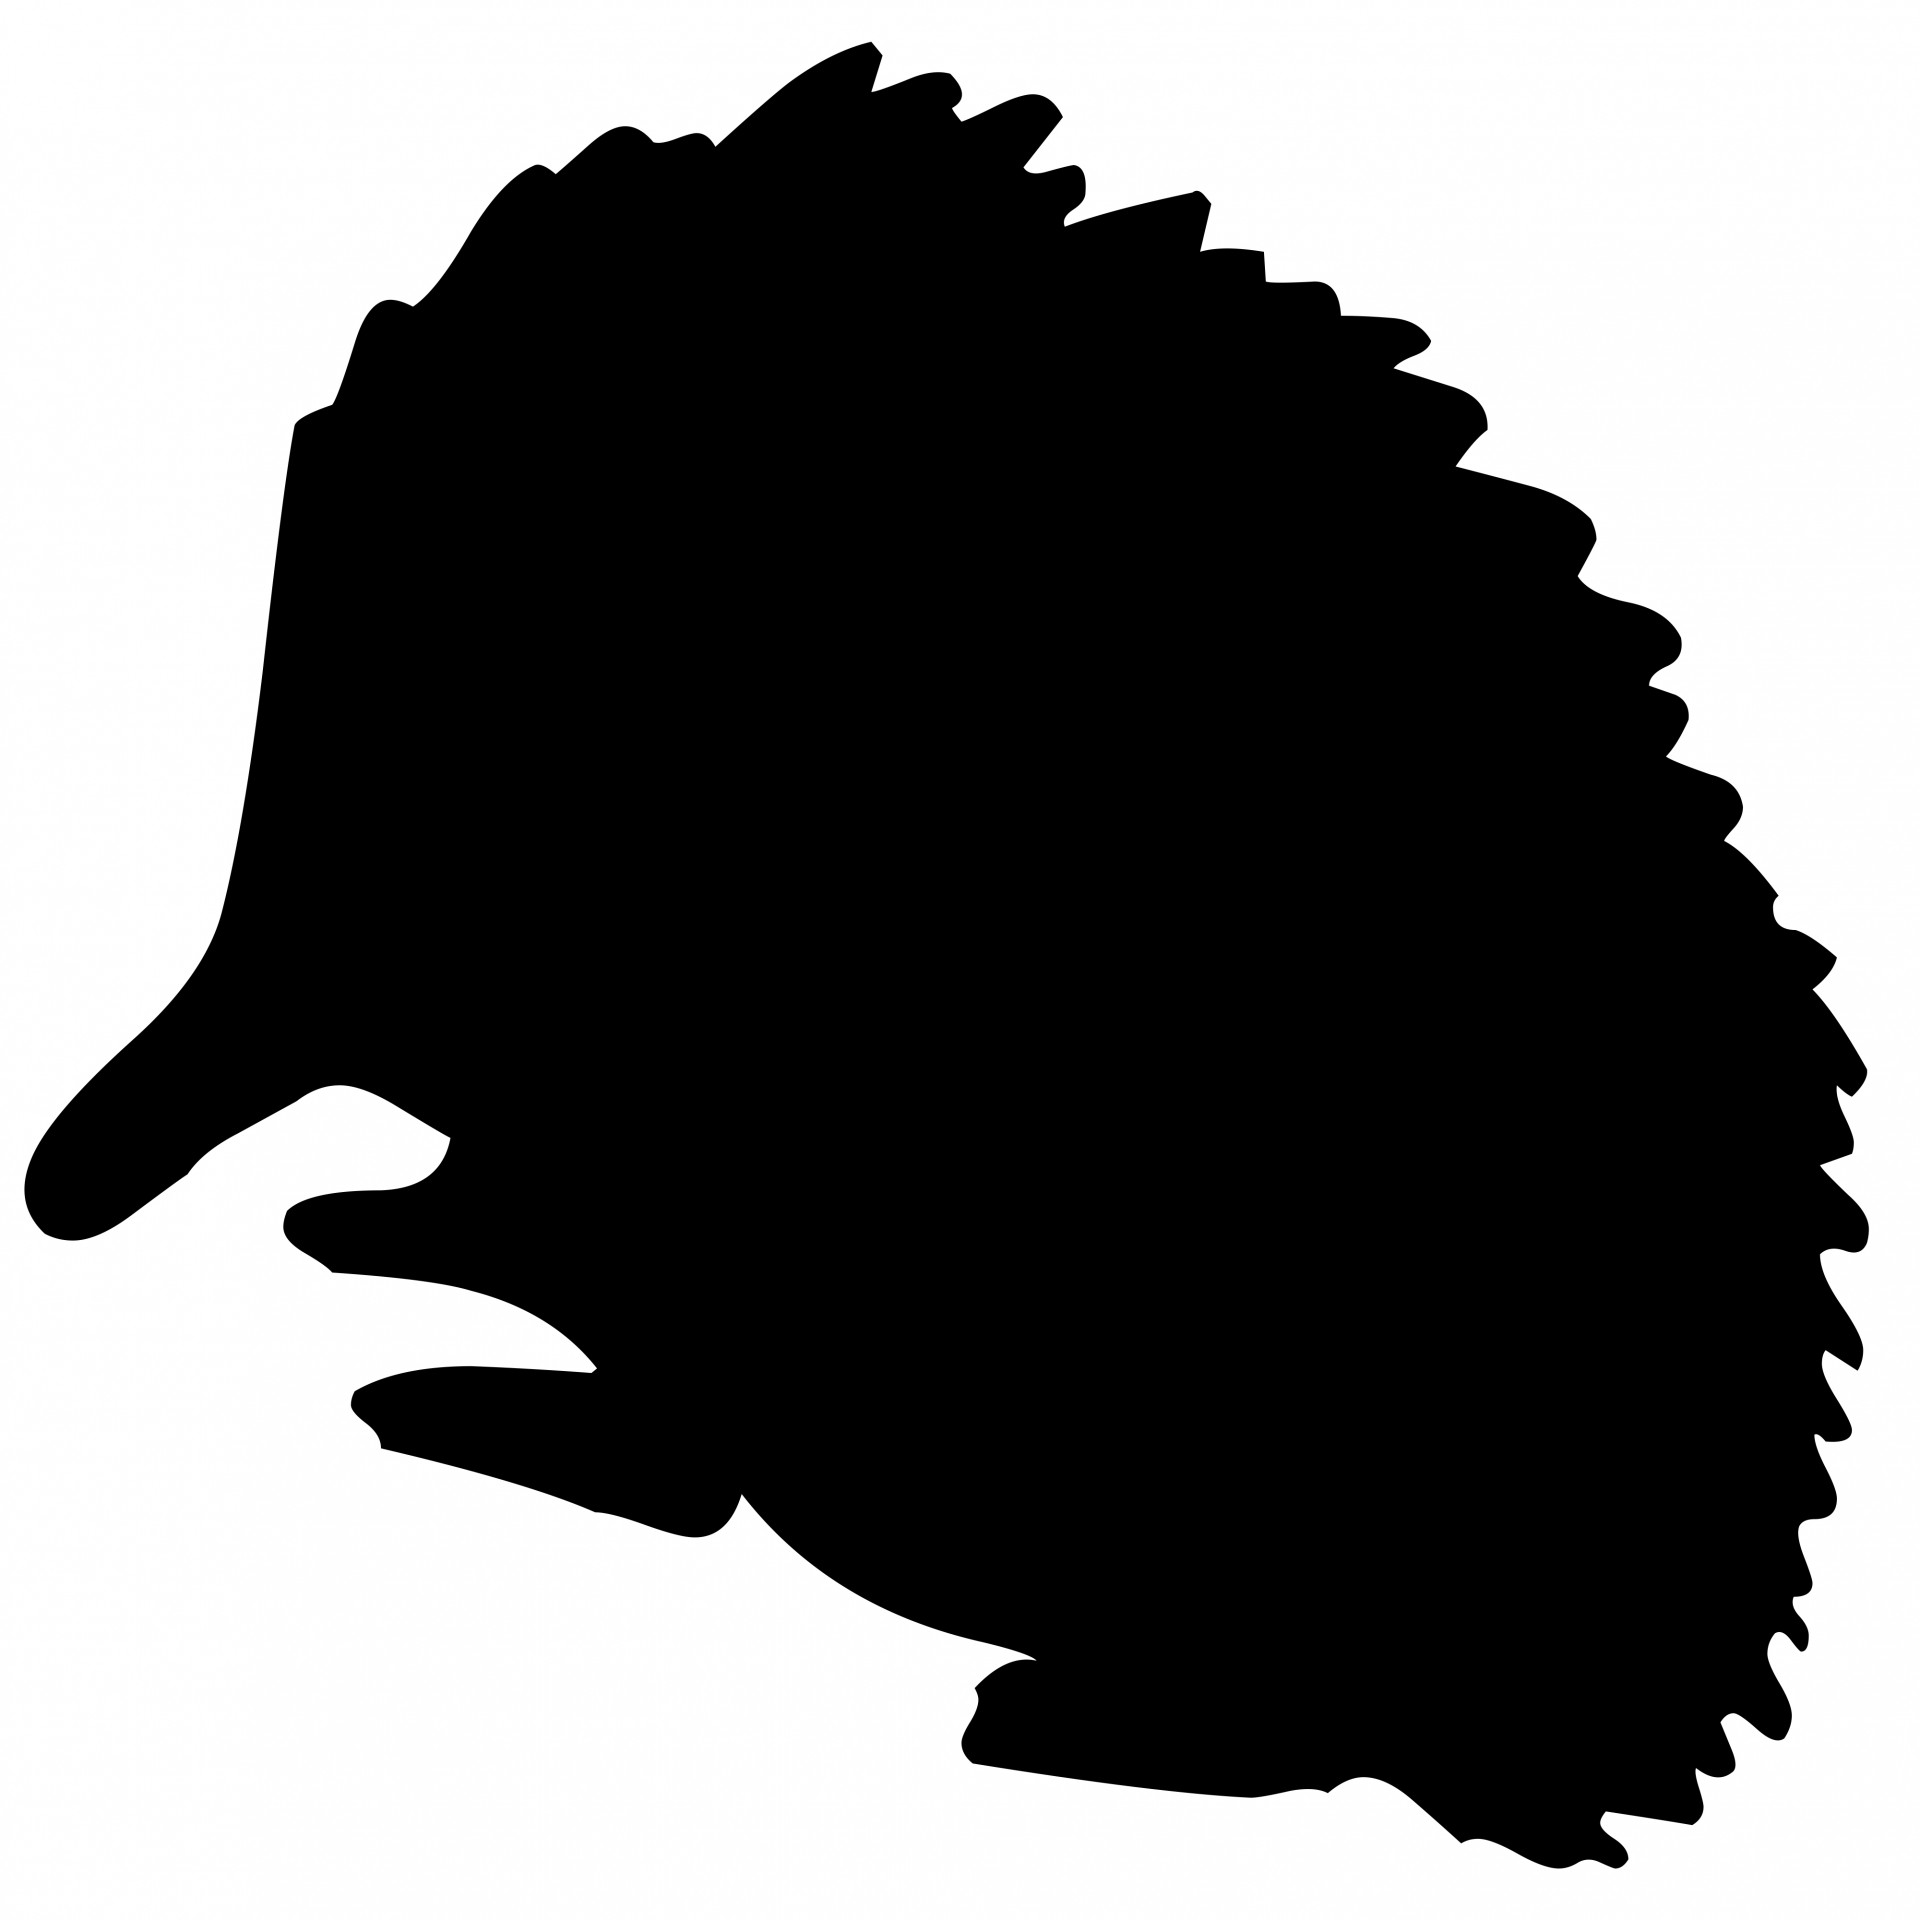 hedgehog clipart outline - photo #38